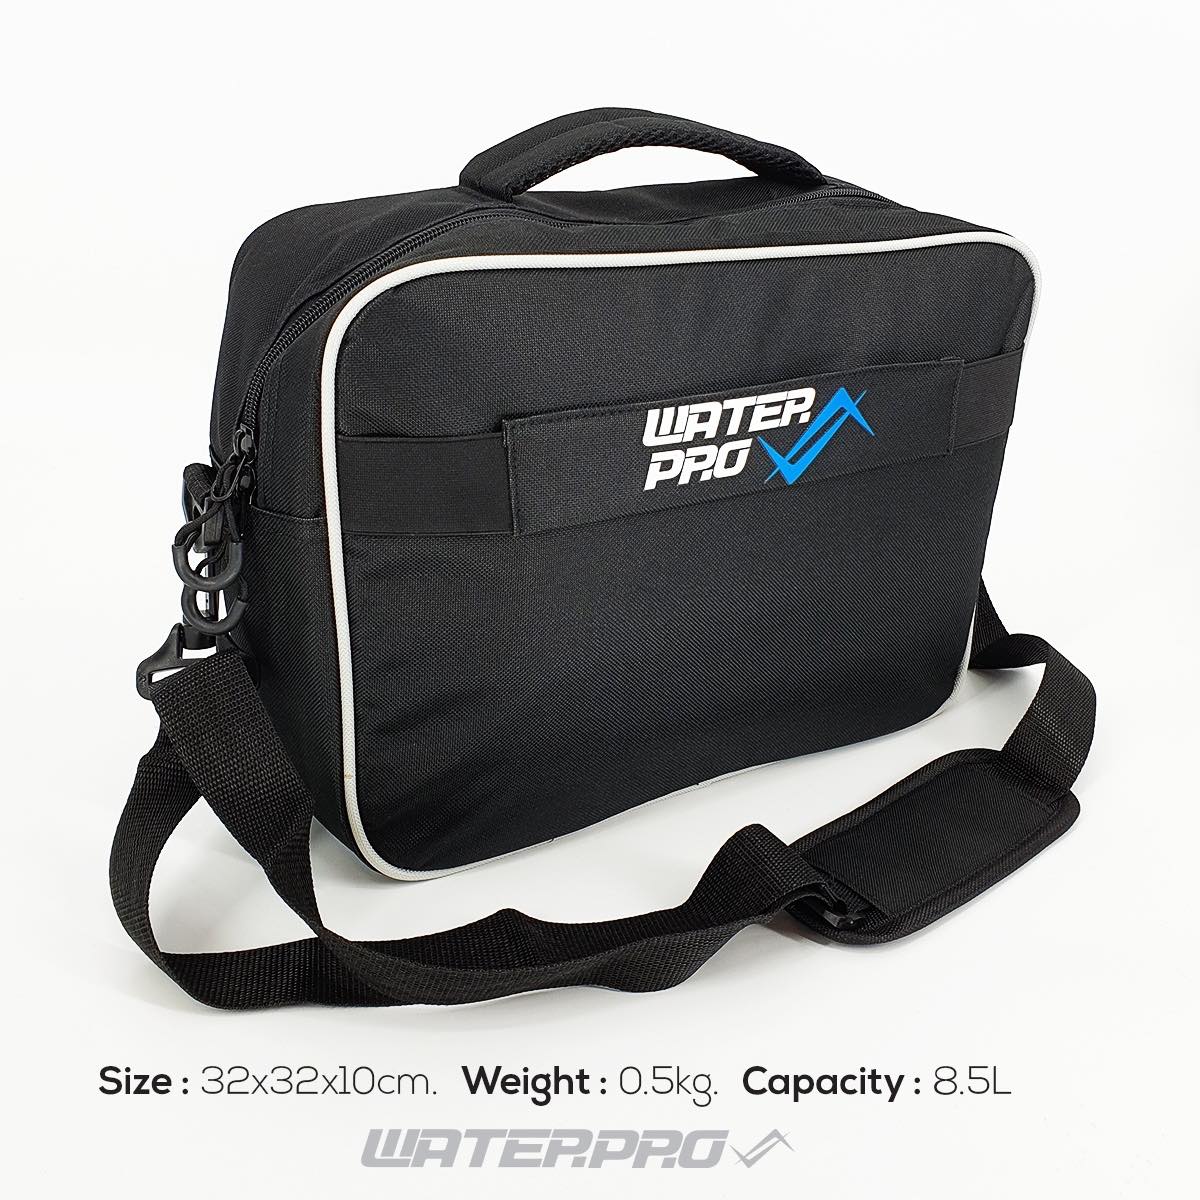 กระเป๋าใส่เลคกูเลเตอร์ 8.5 ลิตร Water pro - Regulator Bag 8.5L